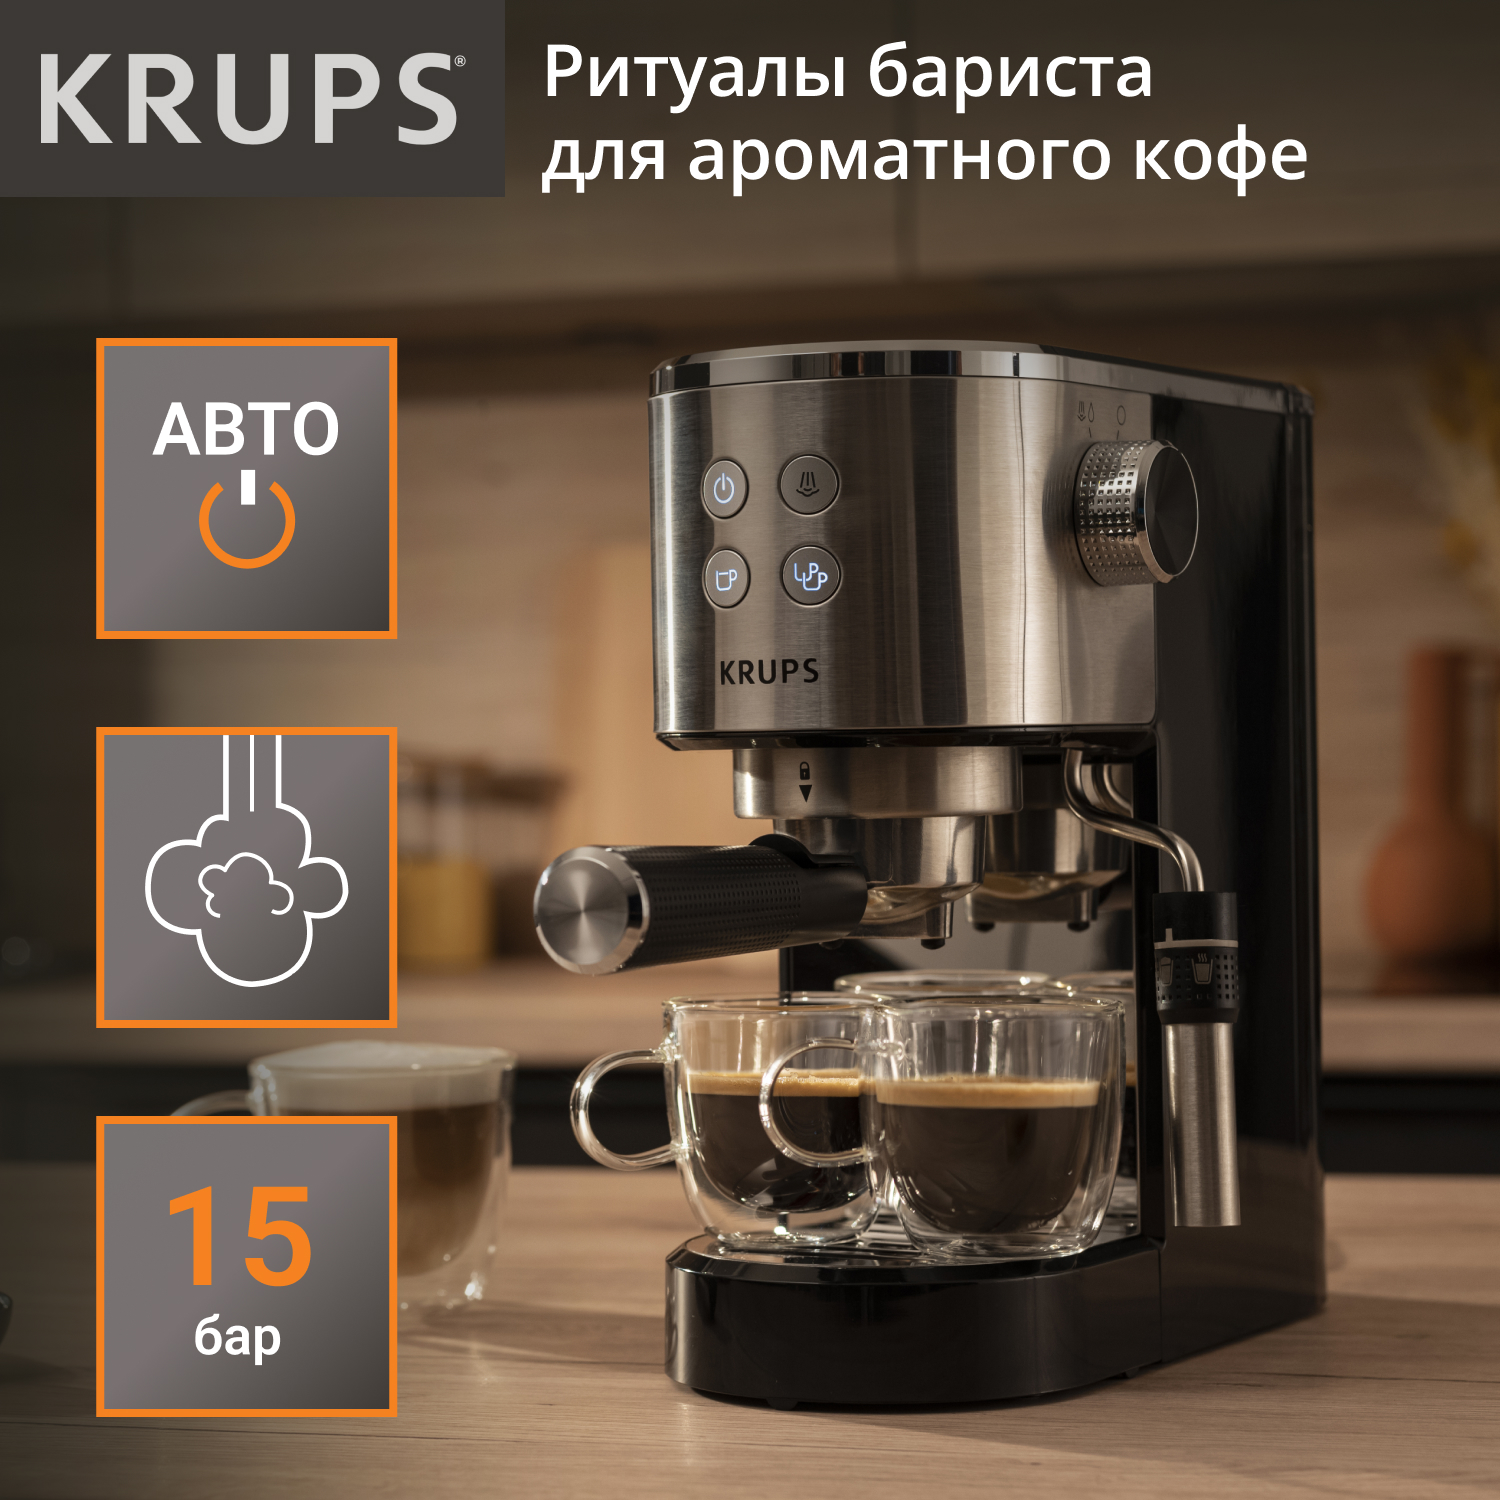 Рожковая кофеварка KRUPS XP444C10 серебристая, черная рожковая кофеварка krups xp444c10 серебристая черная